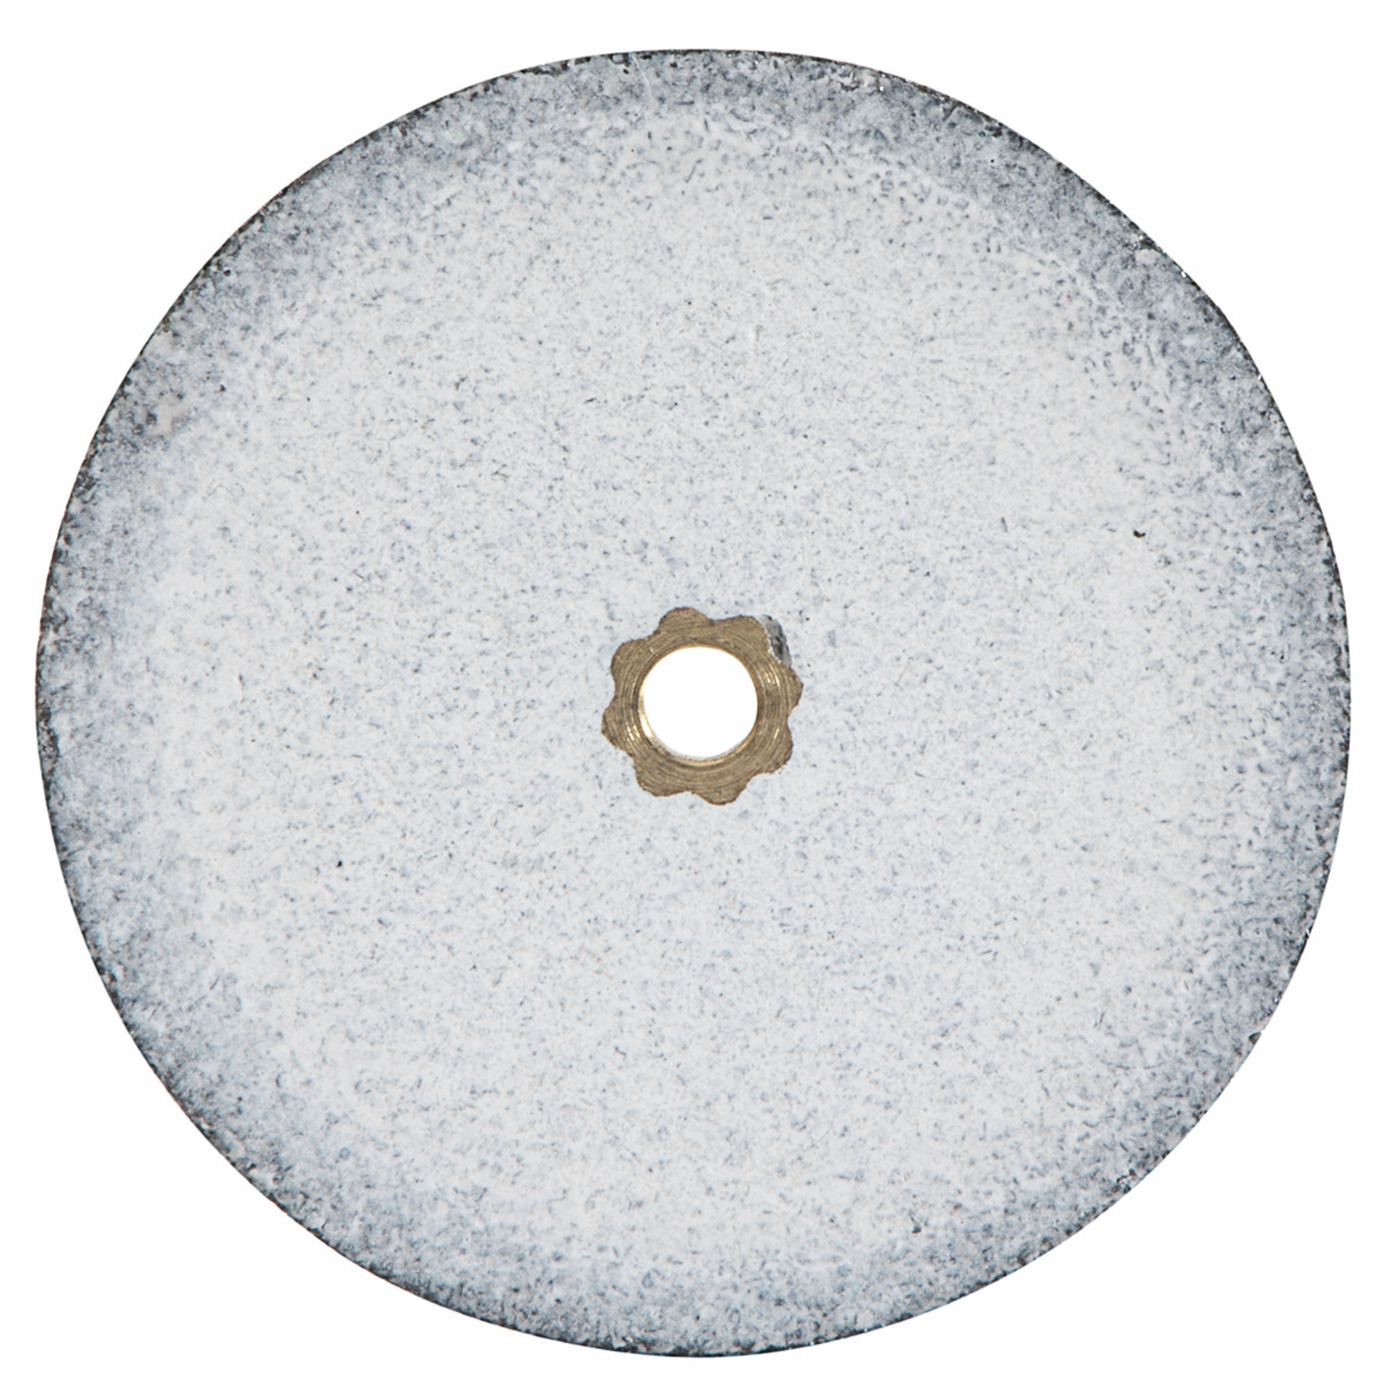 Heatless Grinding Discs, ø 22 x 2.4 mm - 50 pieces